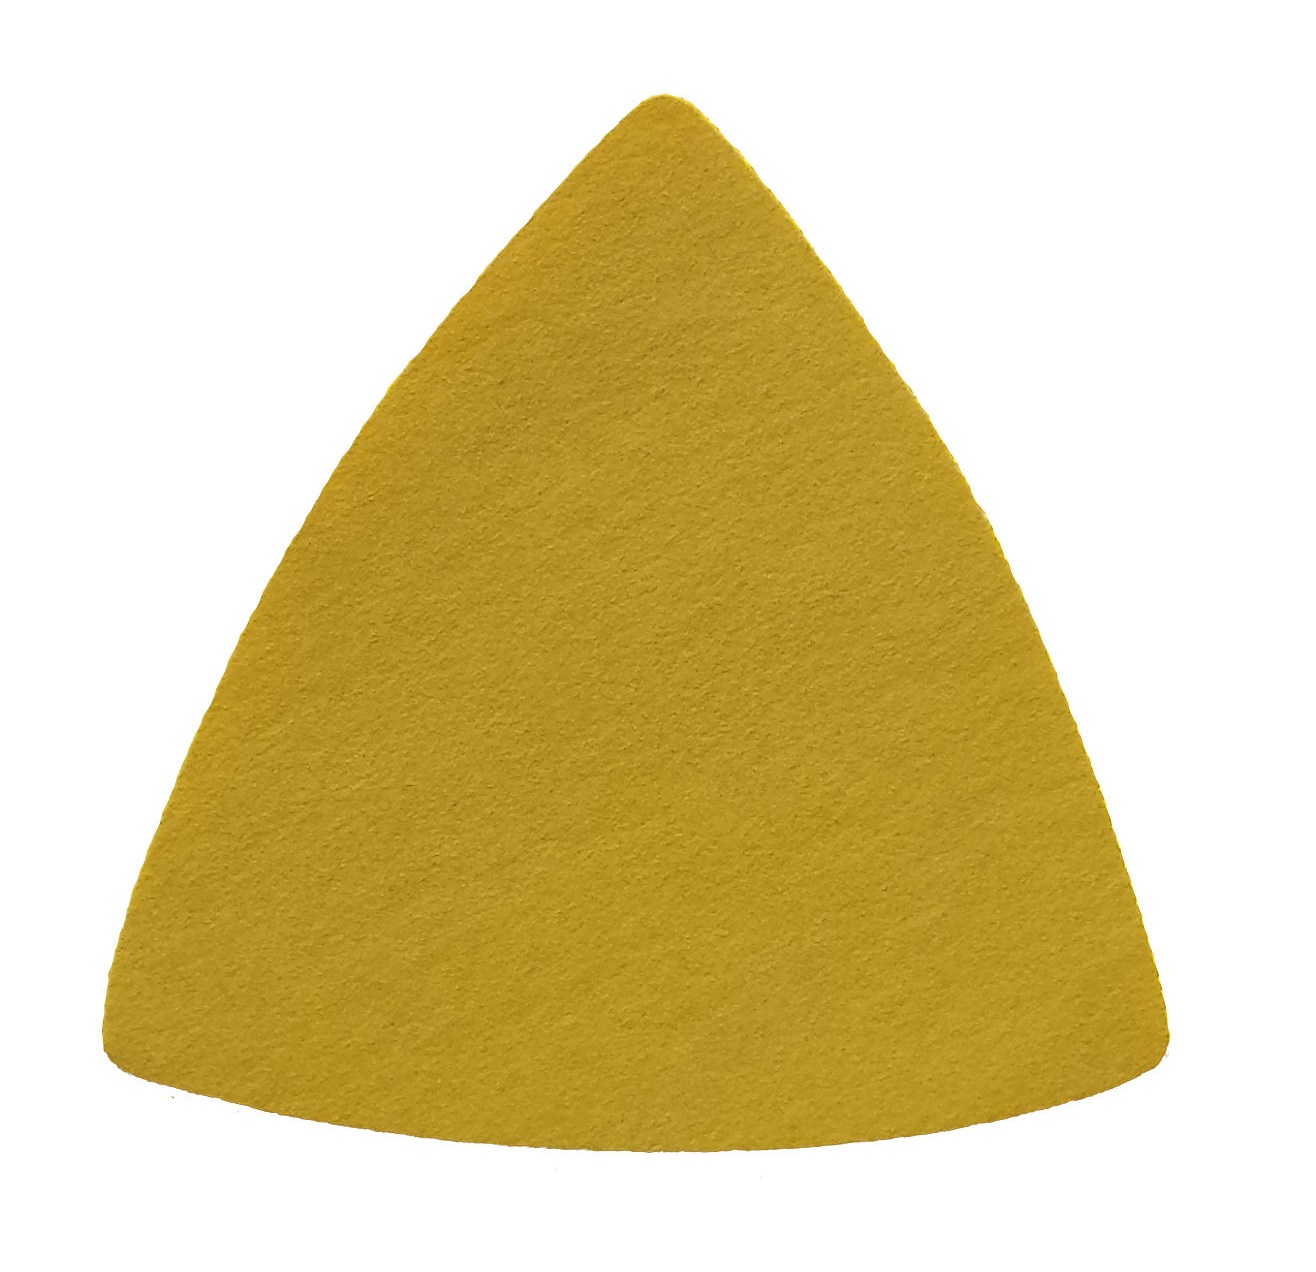 Triunghiuri abrazive - Triunghi abraziv Velcro 255P 79 0G P240, oldindustry.ro